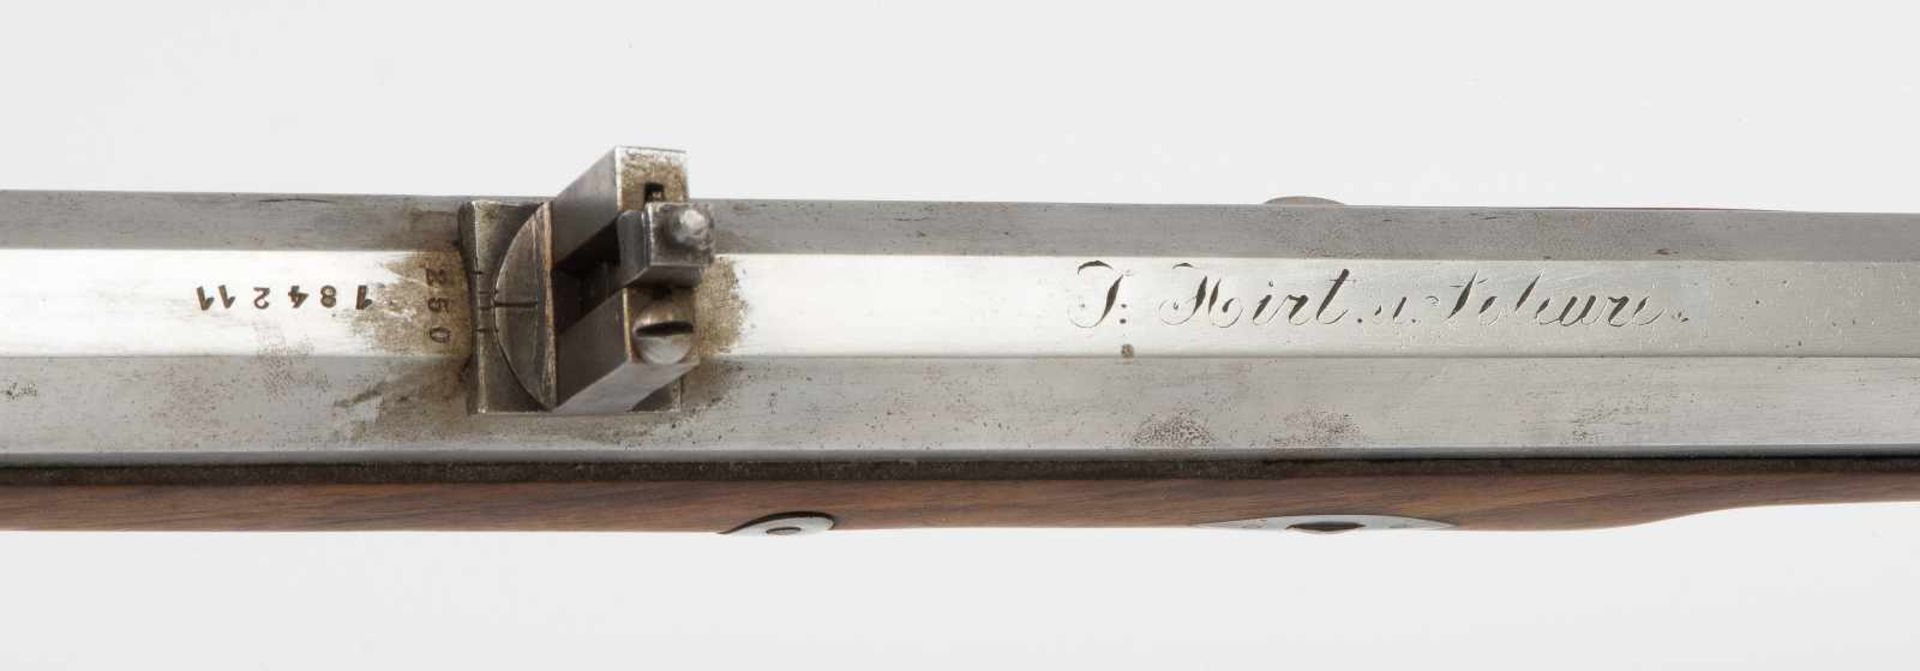 PerkussionsgewehrSolothurn, 1840. Oktogonaler Lauf mit Zügen, Kal. 18mm. Quantenvisierung mit - Bild 3 aus 3